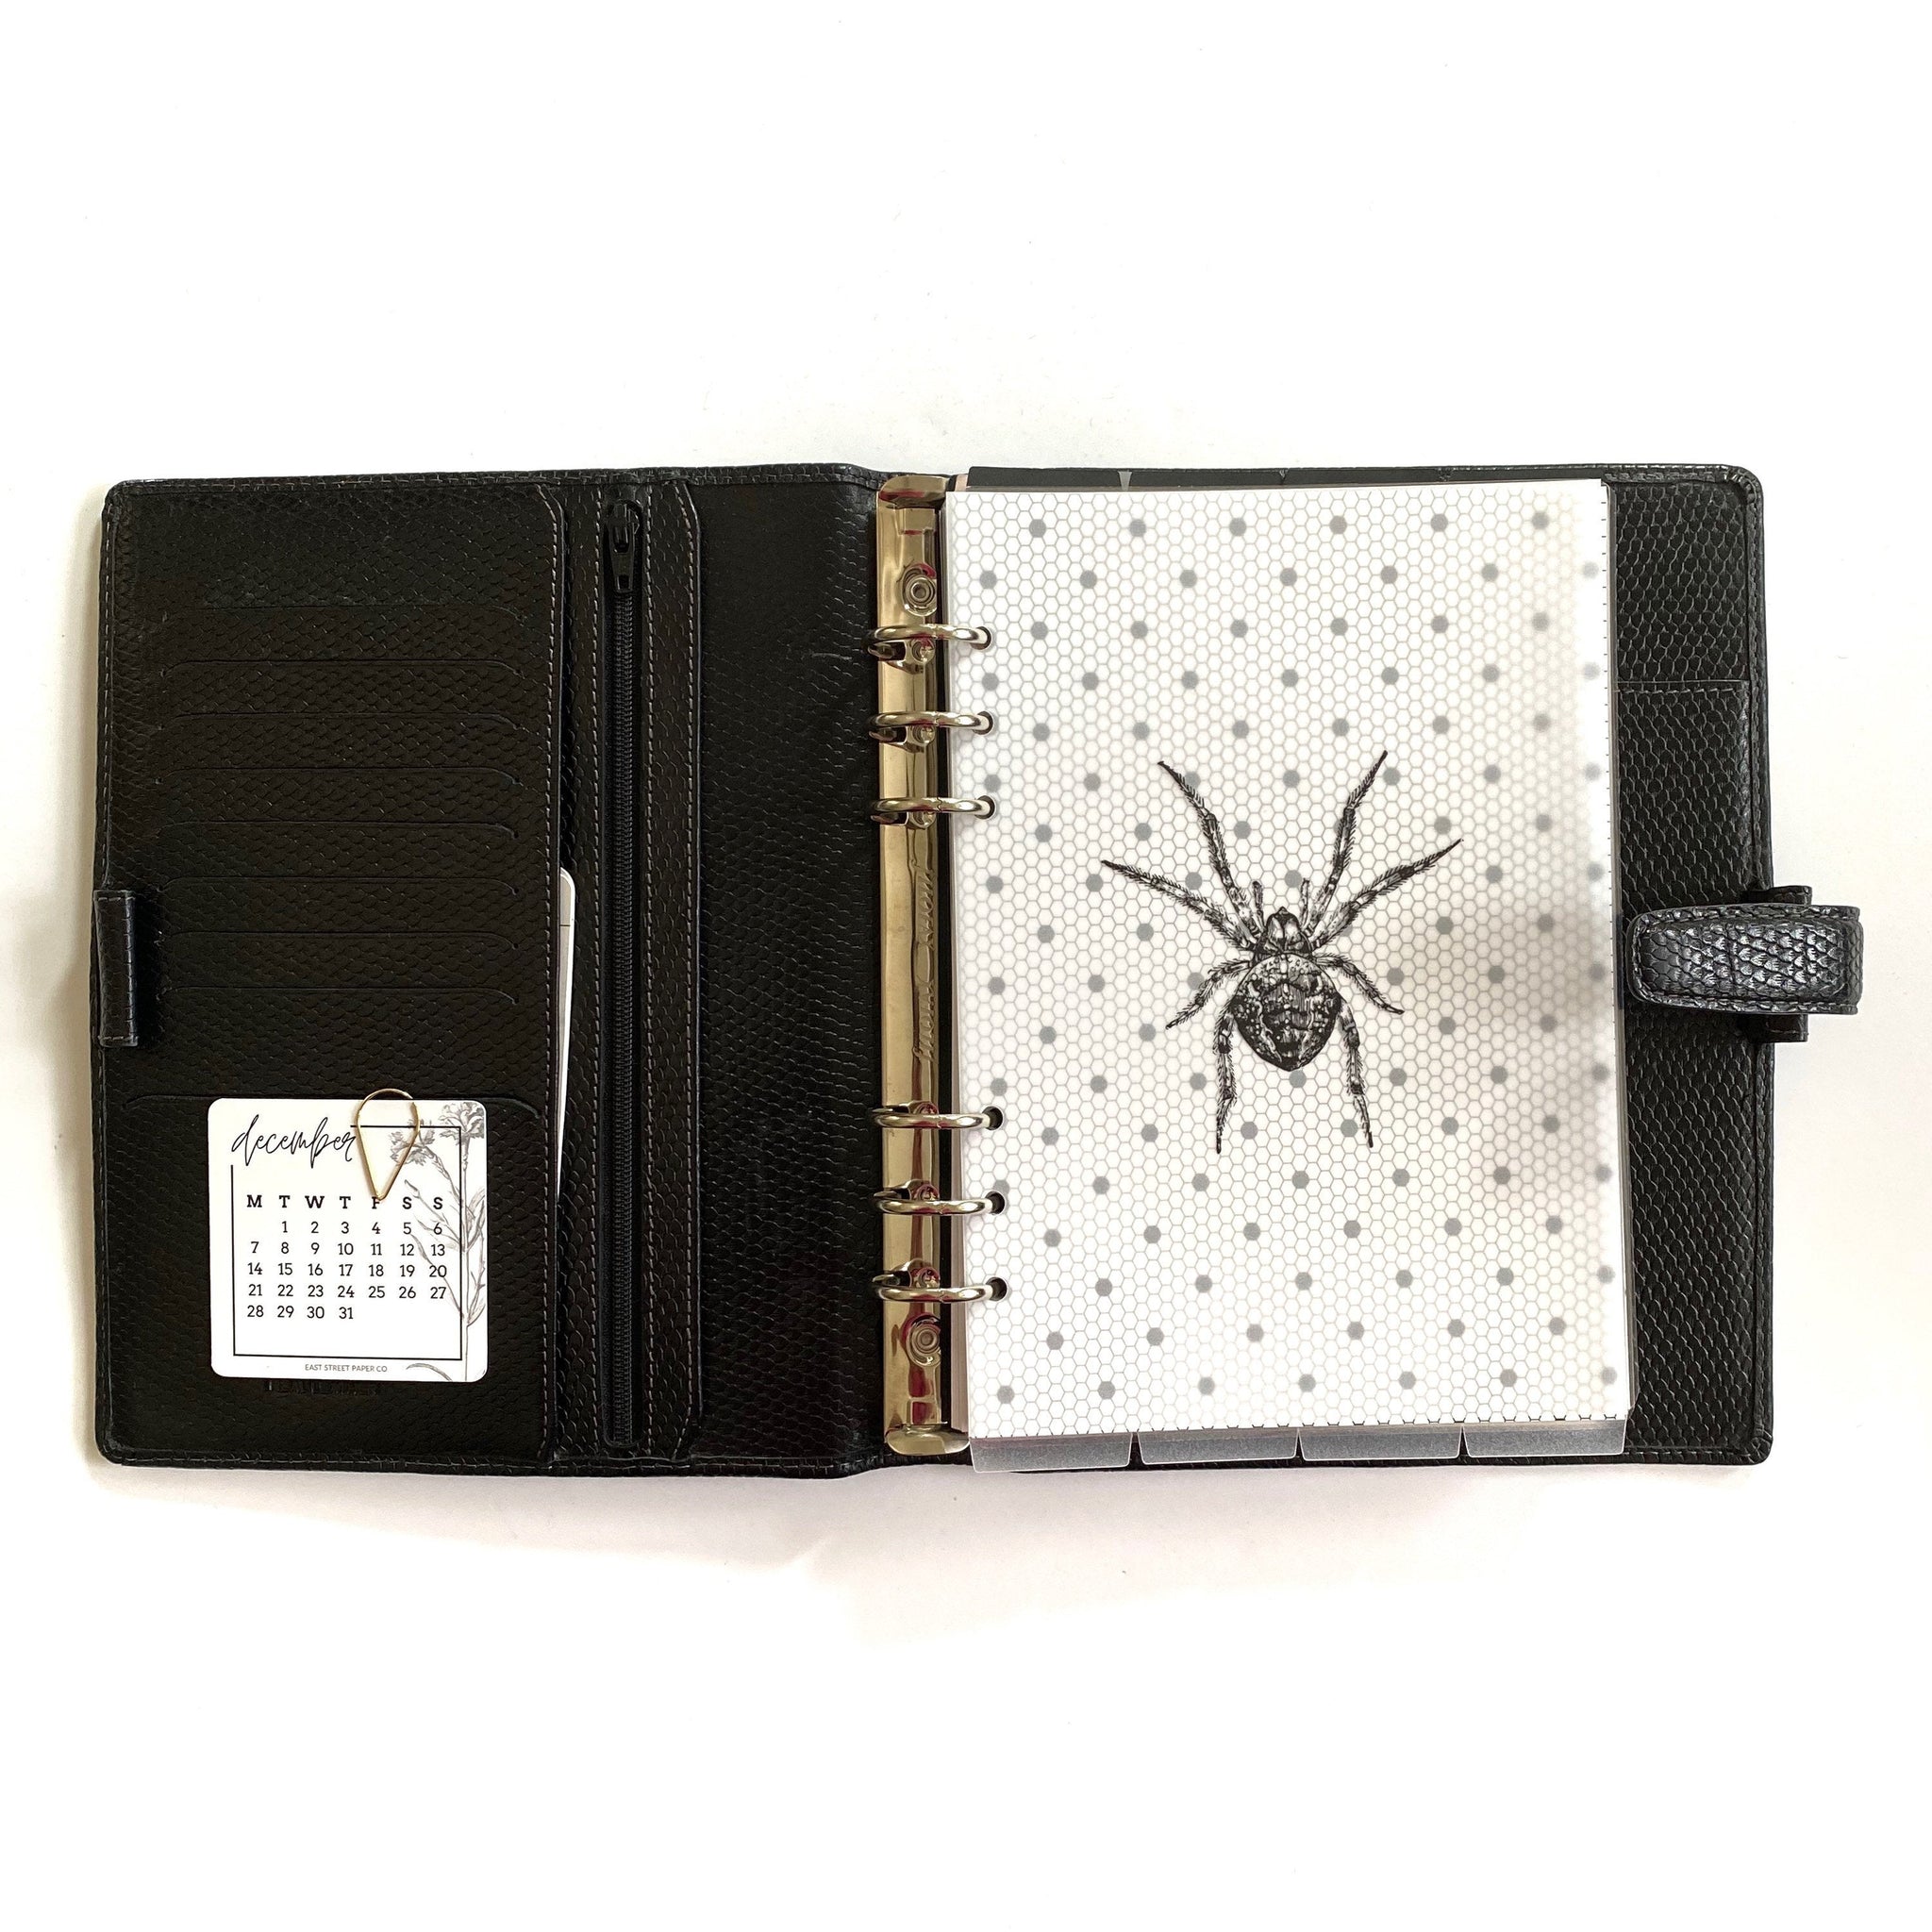 Spider Minimal Planner Dashboard Vellum Overlay Dash Inbox Clear - East Street Paper Co.